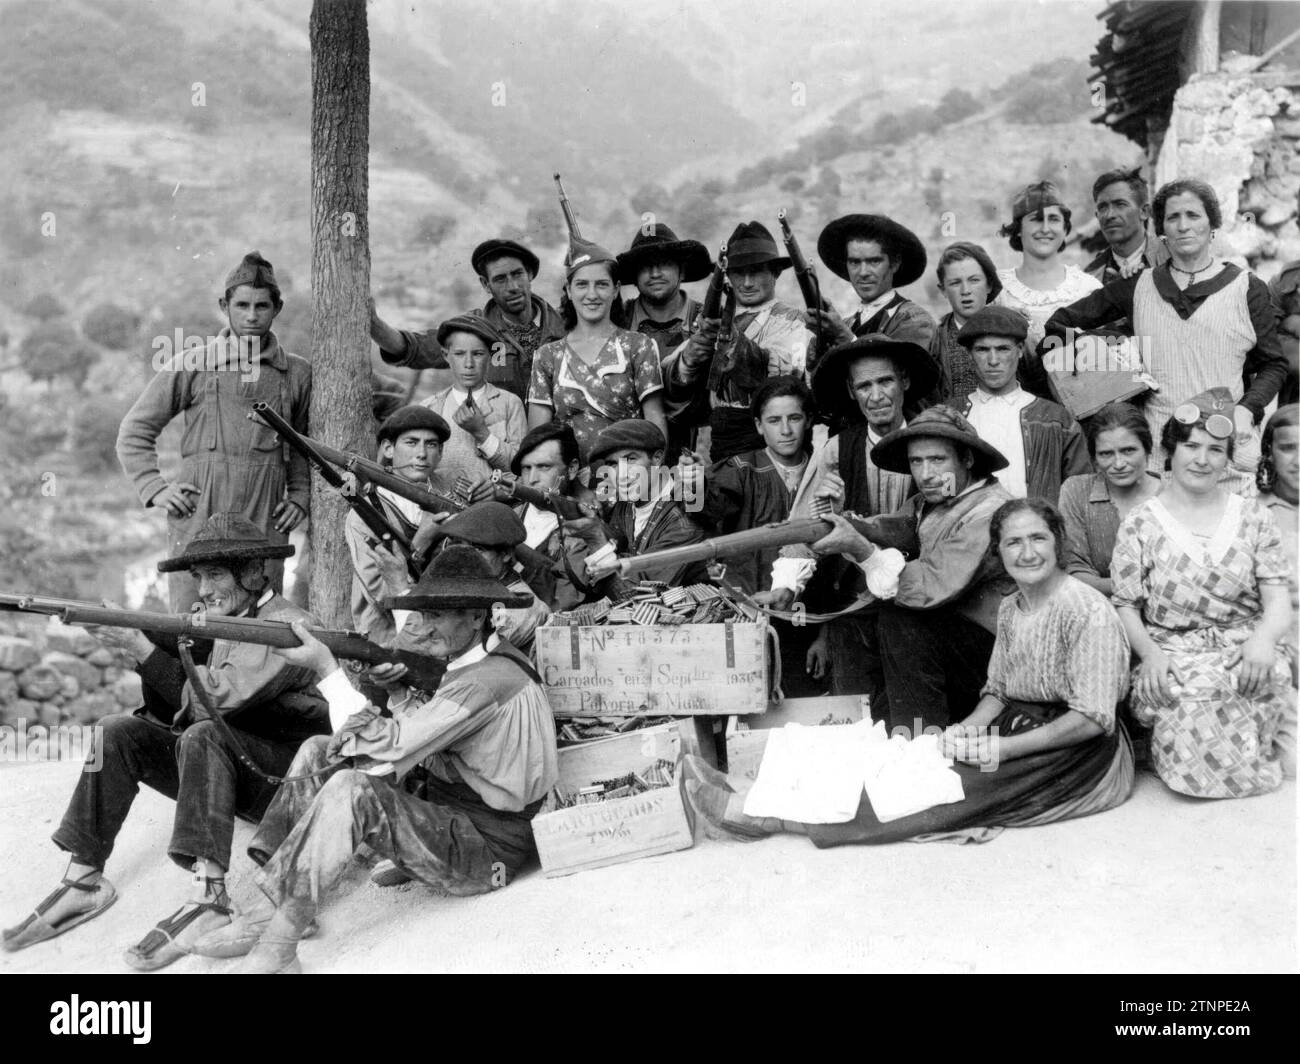 08/31/1936. Contadini che si unirono ai difensori di una posizione avanzata, su uno dei fronti di montagna. Crediti: Album / Archivo ABC / Boira Foto Stock